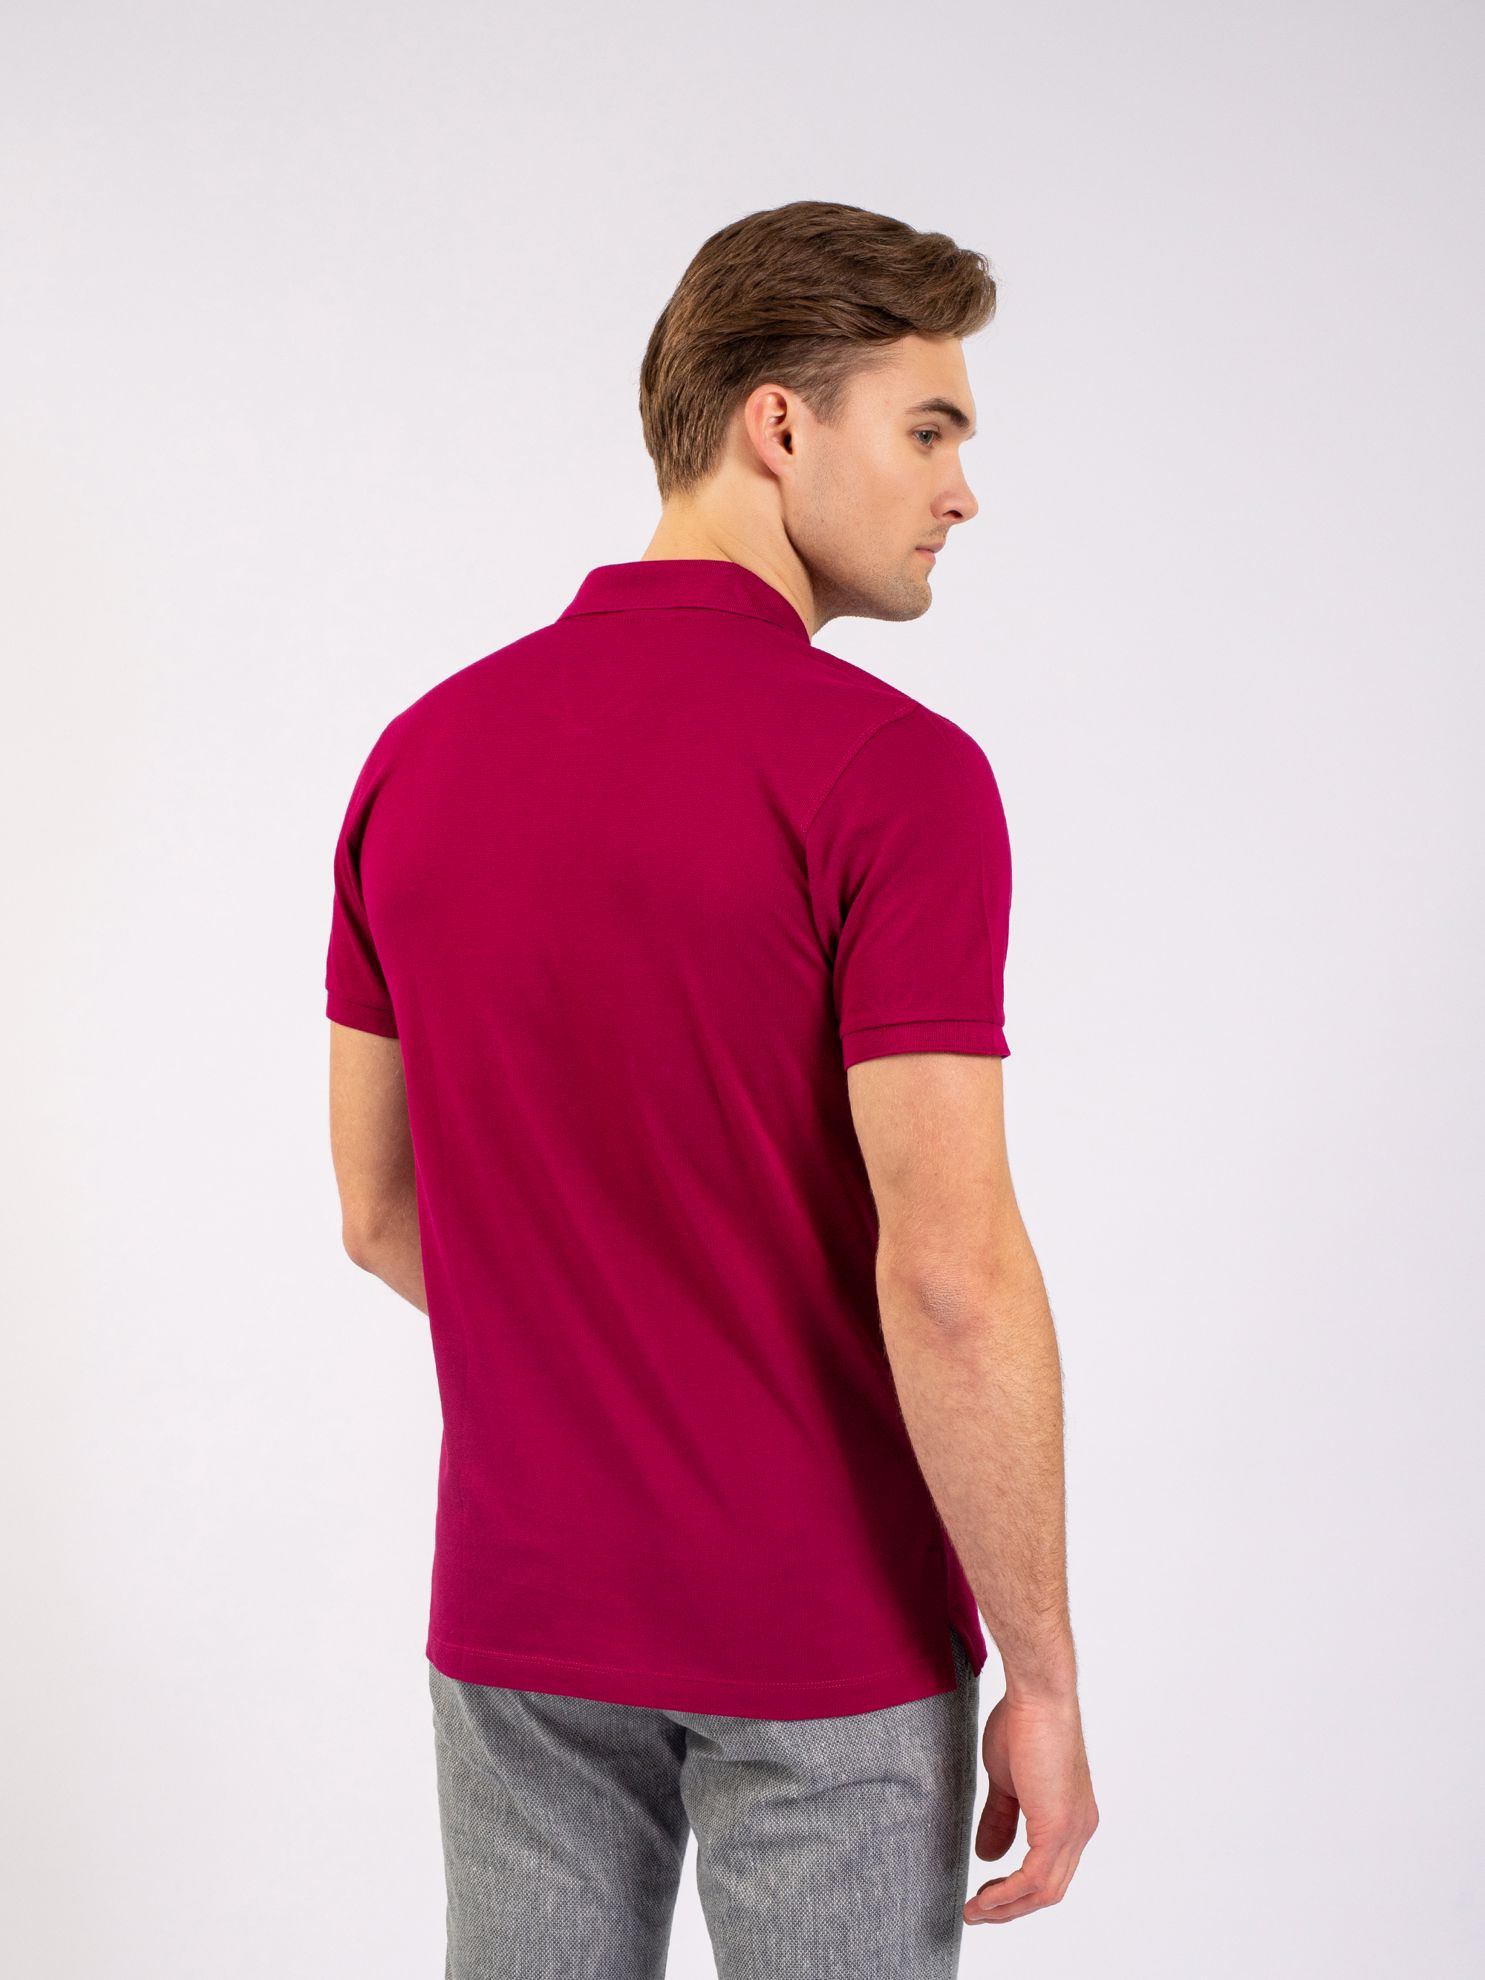 Karaca Erkek Slim Fit Polo Yaka Tişört-Fuşya. ürün görseli